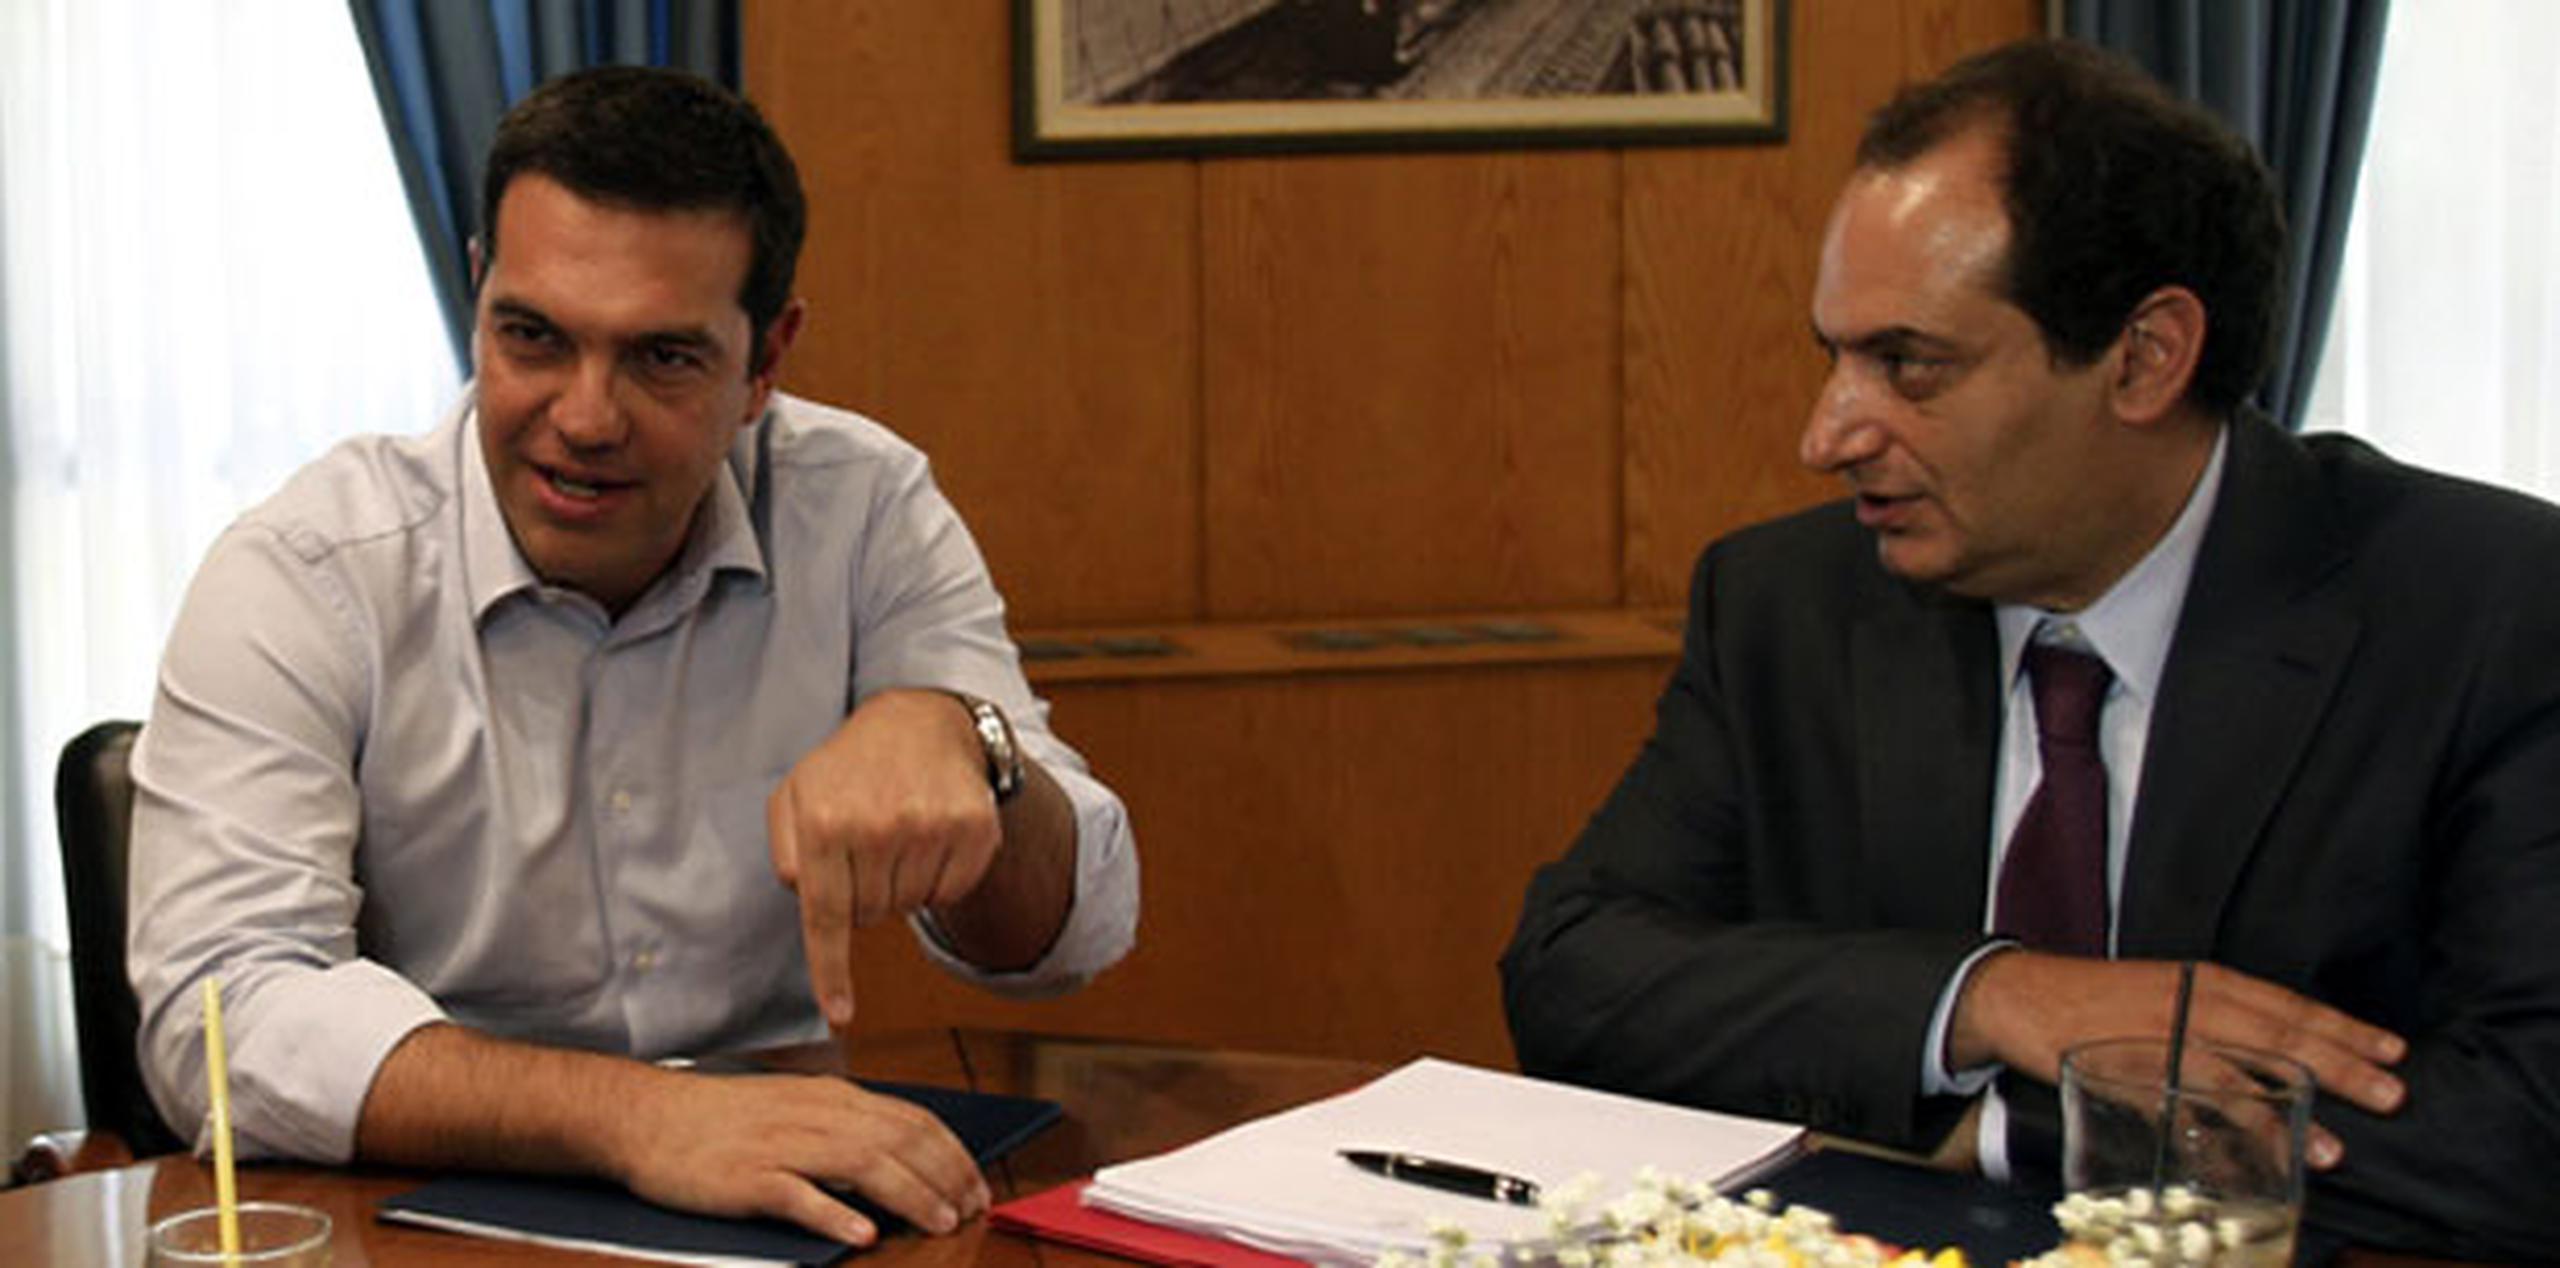 El primer ministro griego Alexis Tsipras (izquierda) y el ministro de Fomento y Transporte, Christos Spirtzis durante su encuentro en el ministerio de Fomento en Atenas, Grecia hoy, 12 de agosto. (EFE/Alexandros Vlachos)